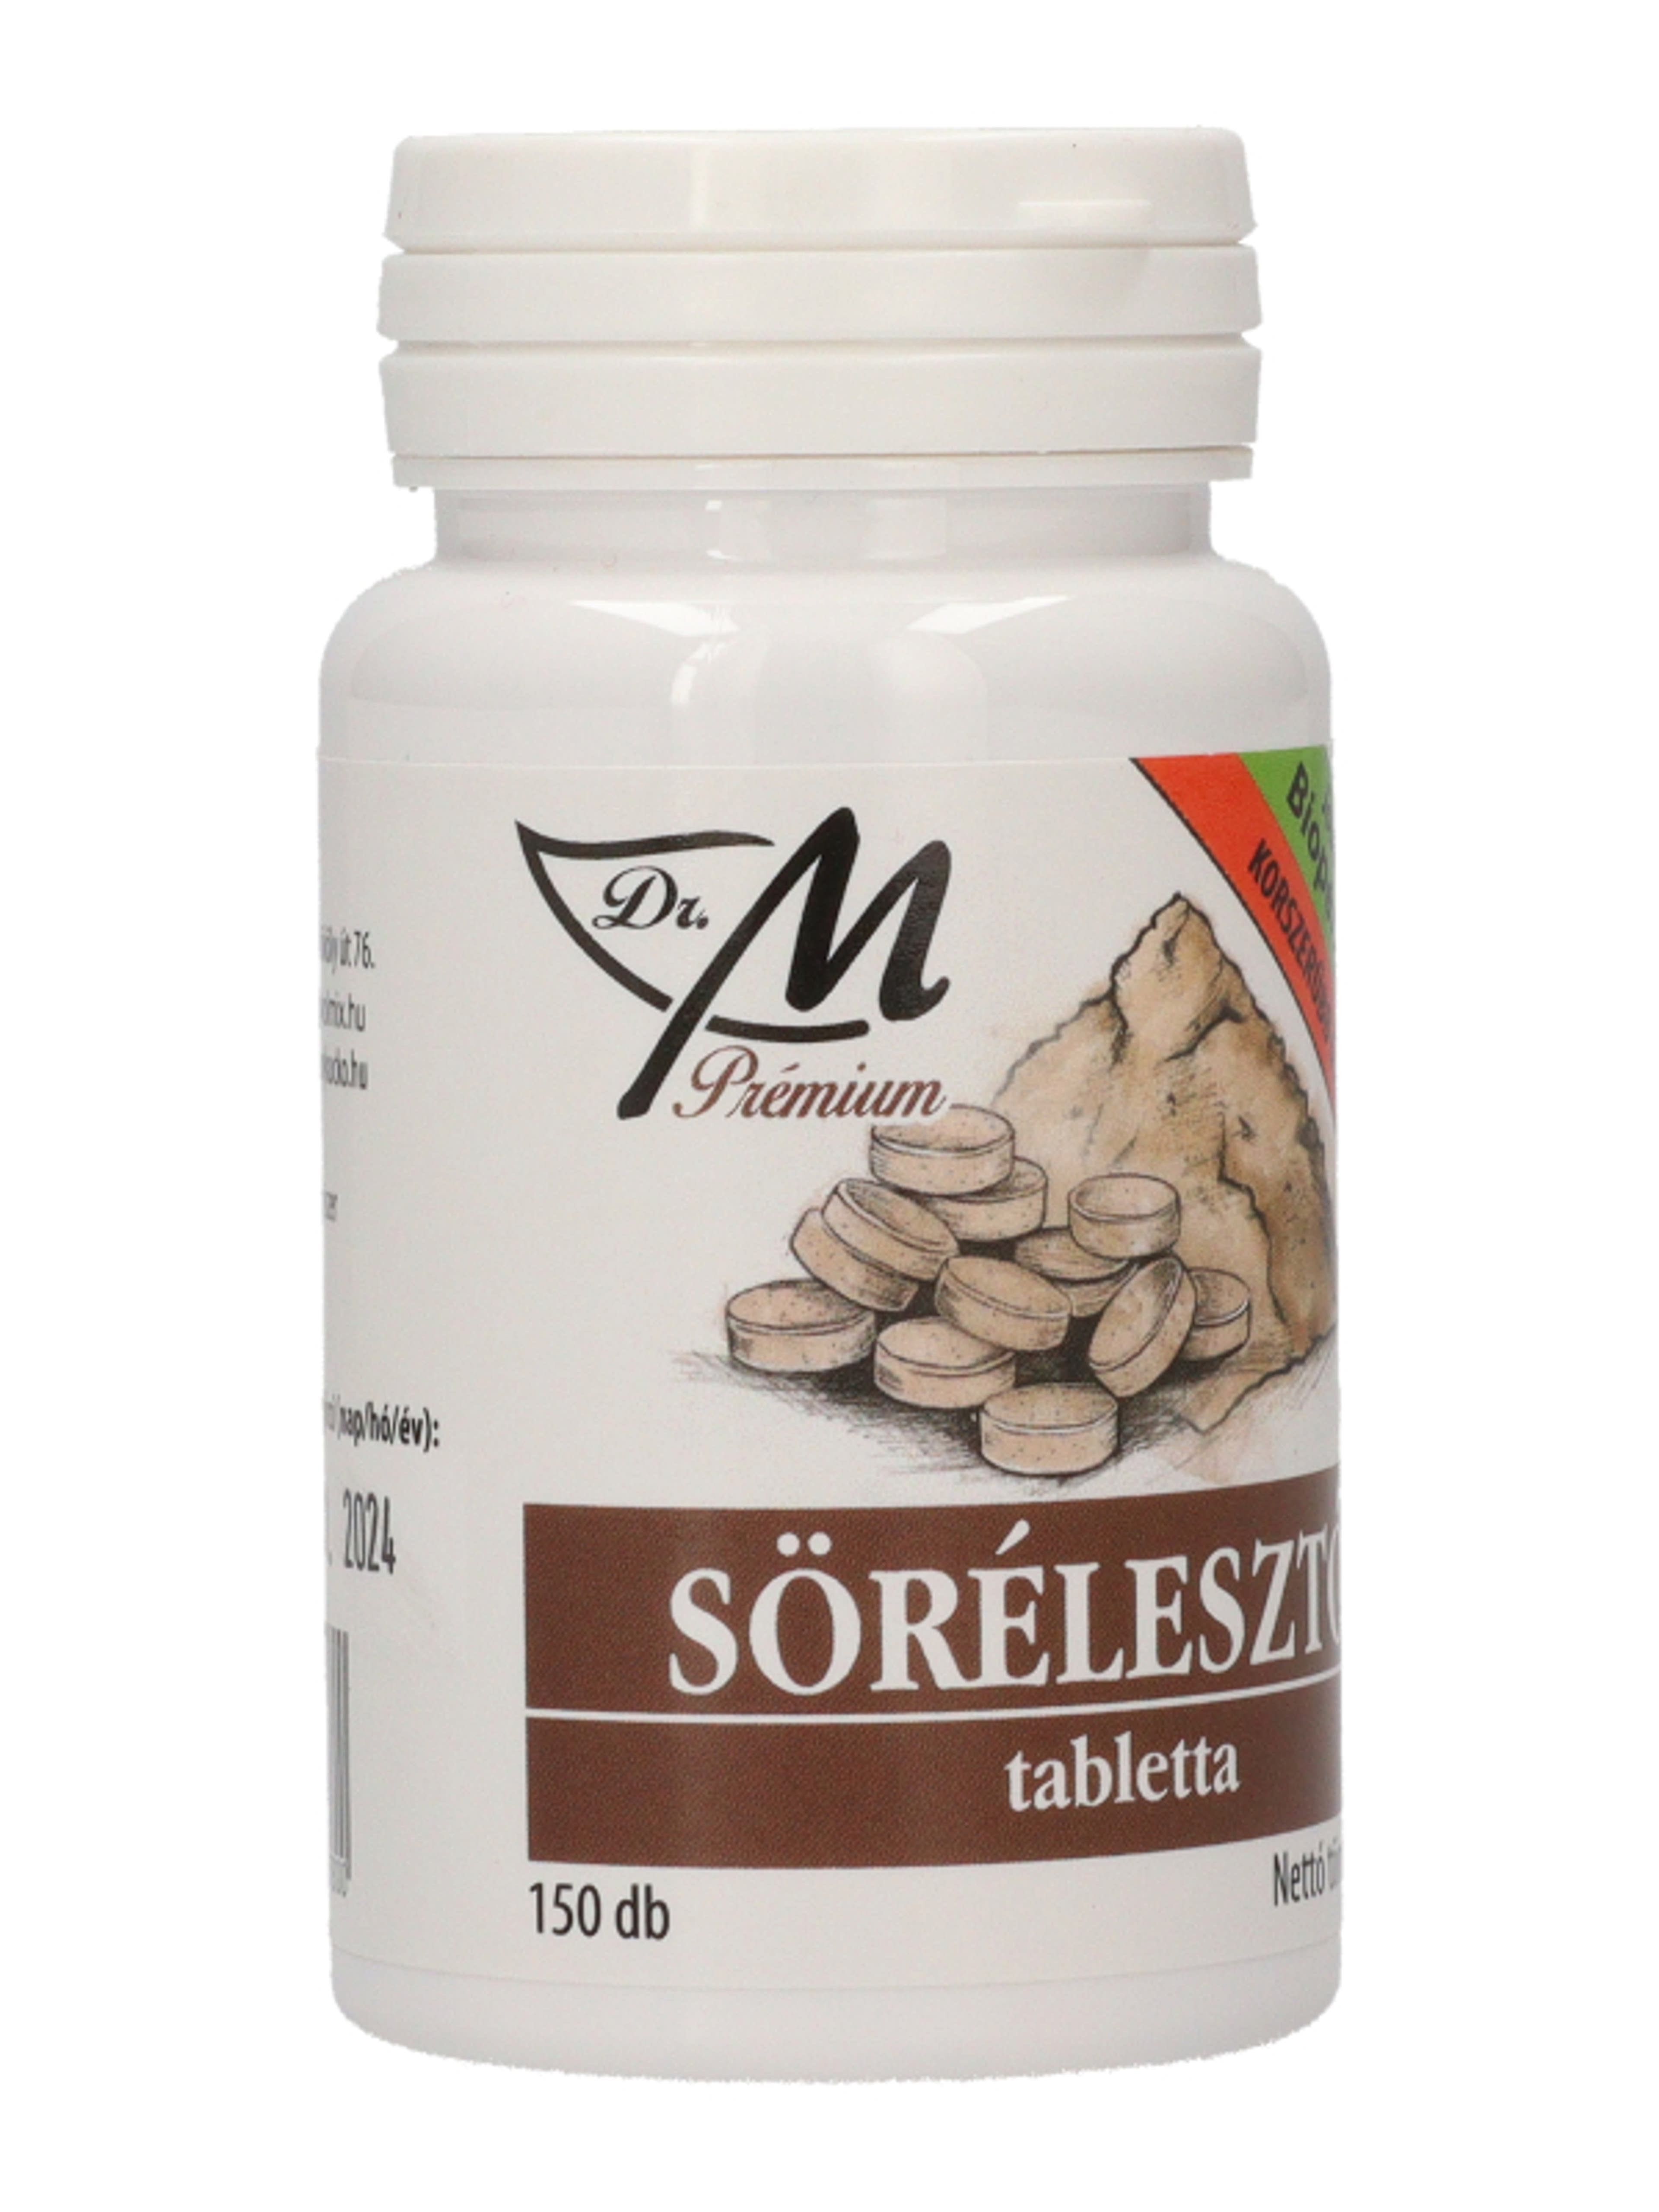 Dr.M prémium söréleszto+bioperine tabletta - 150 db-4